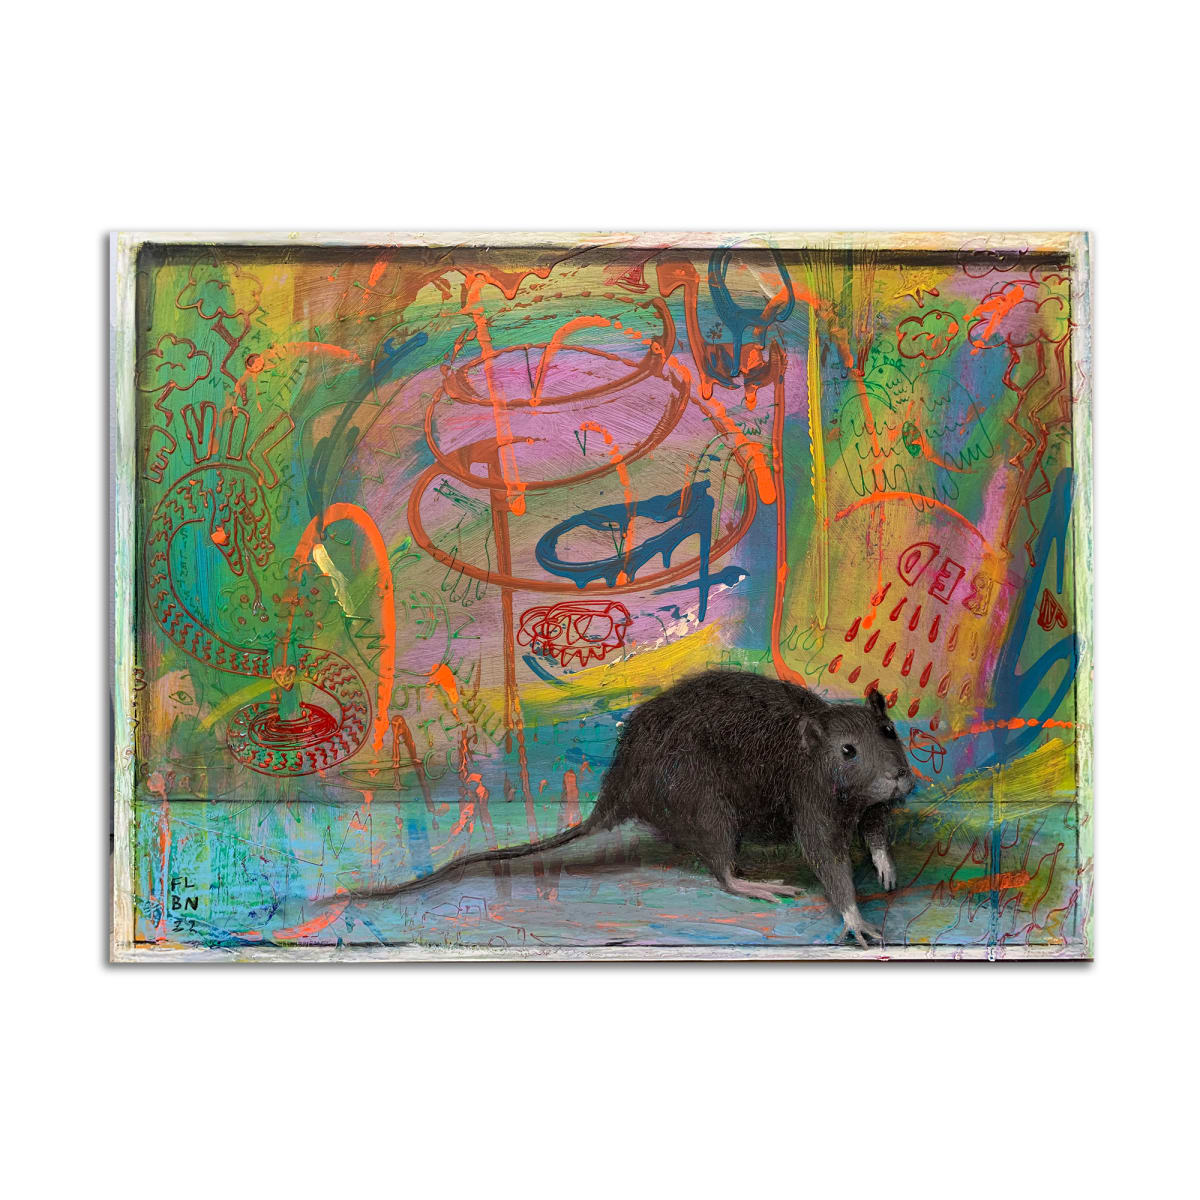 Rat Pop 1 by Brad Noble x François Larivière 